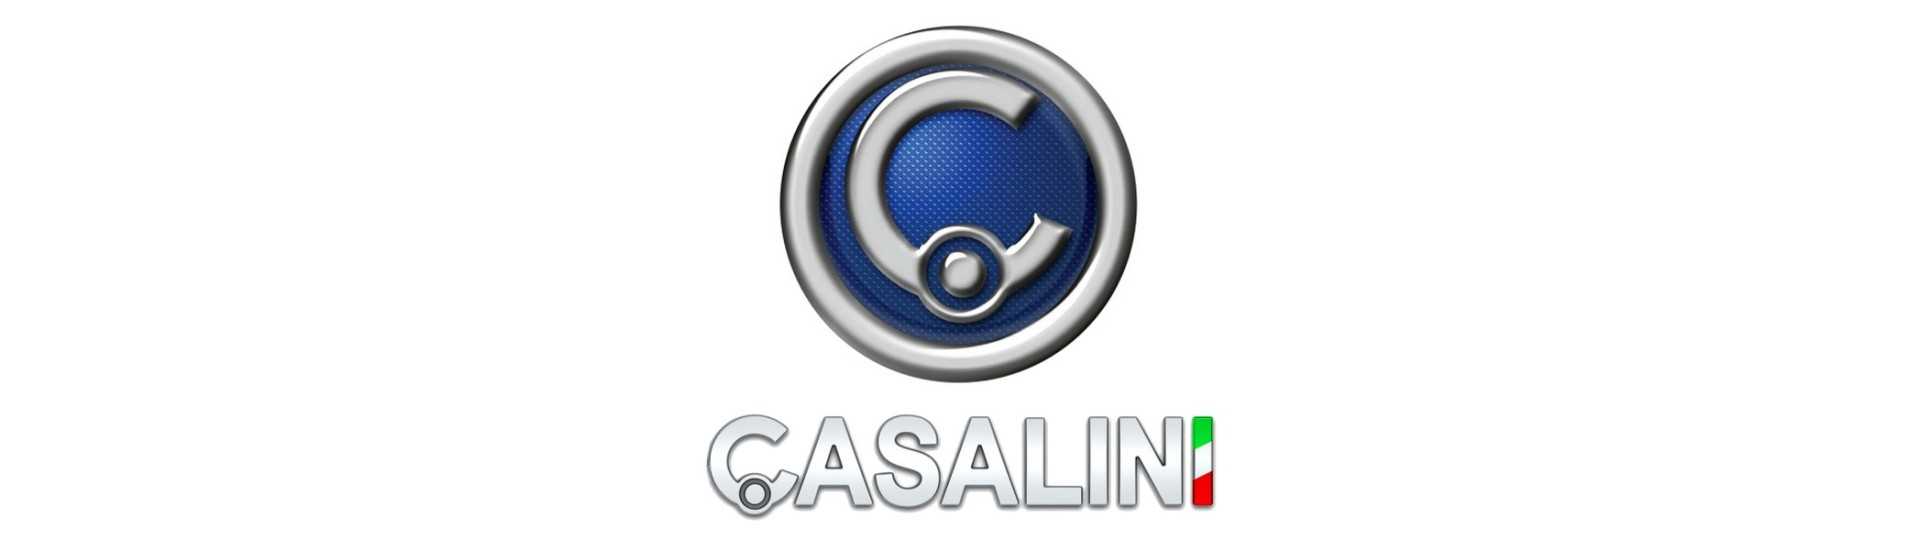 Manómetro de combustible al mejor precio para coche sin permiso Casalini